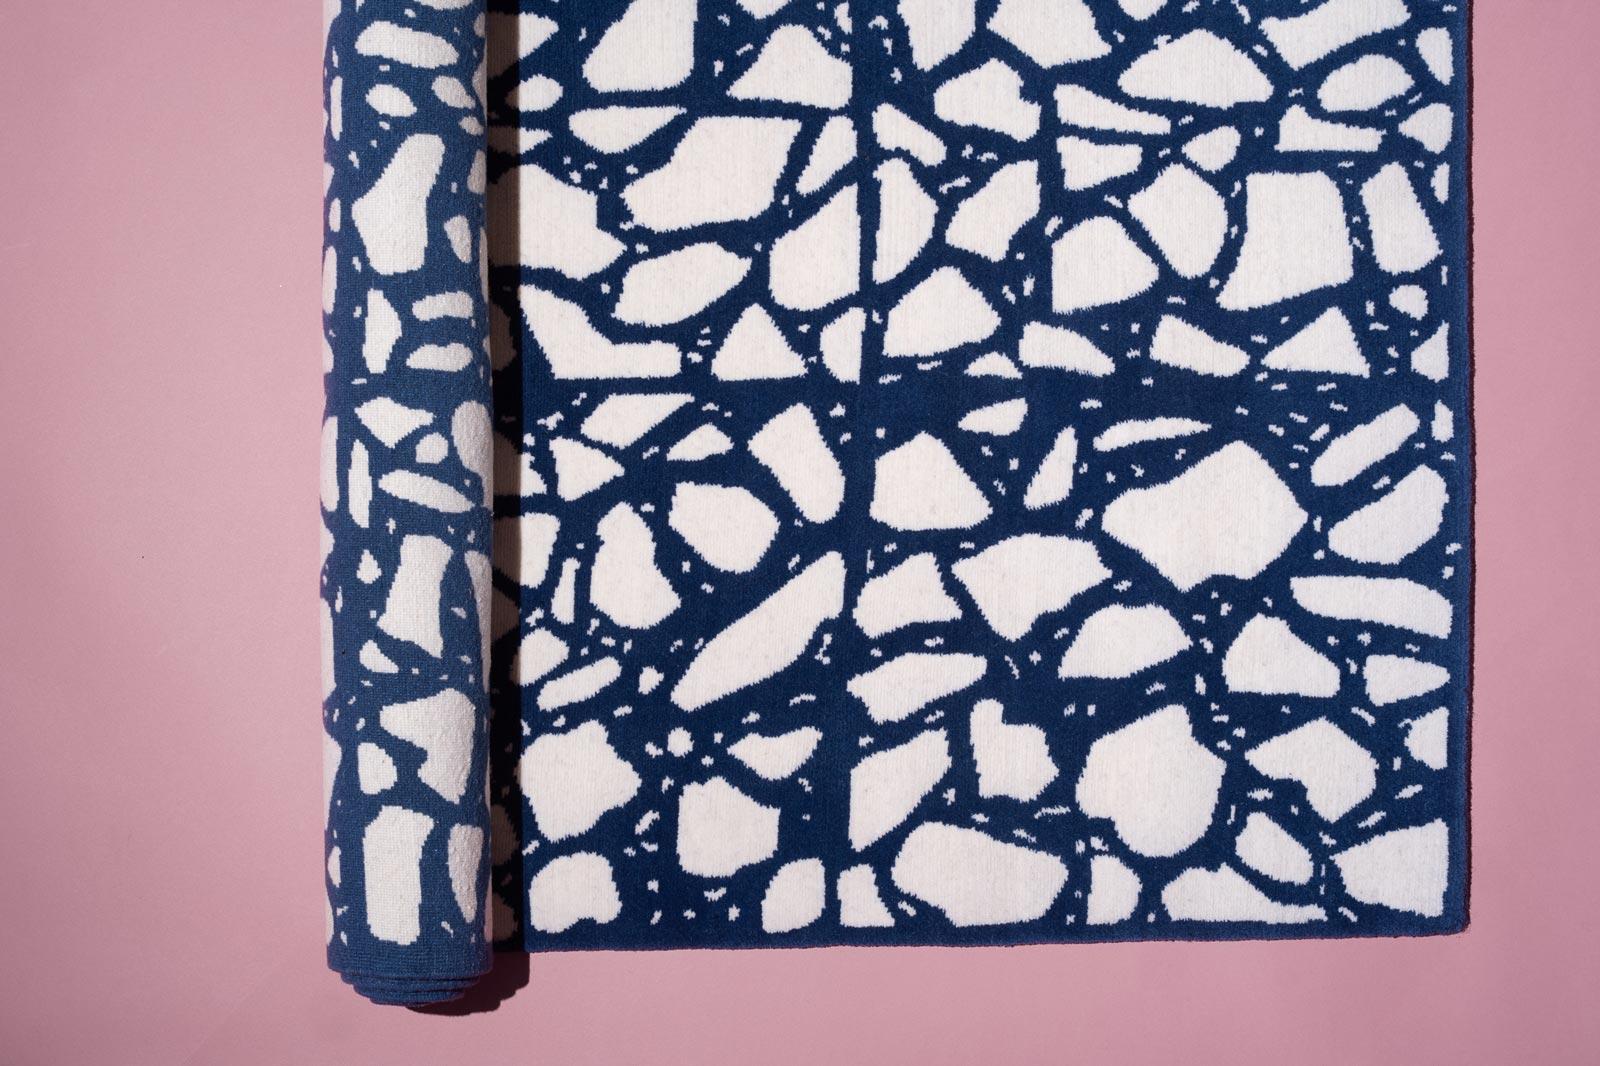 Mediterraneo est une série de tapis inspirés par les sols traditionnels italiens en terrazzo. Les motifs sont dessinés à la main par Sergio lui-même, plutôt que d'utiliser une image, ce qui donne aux tapis une touche plus intime et personnelle. Les